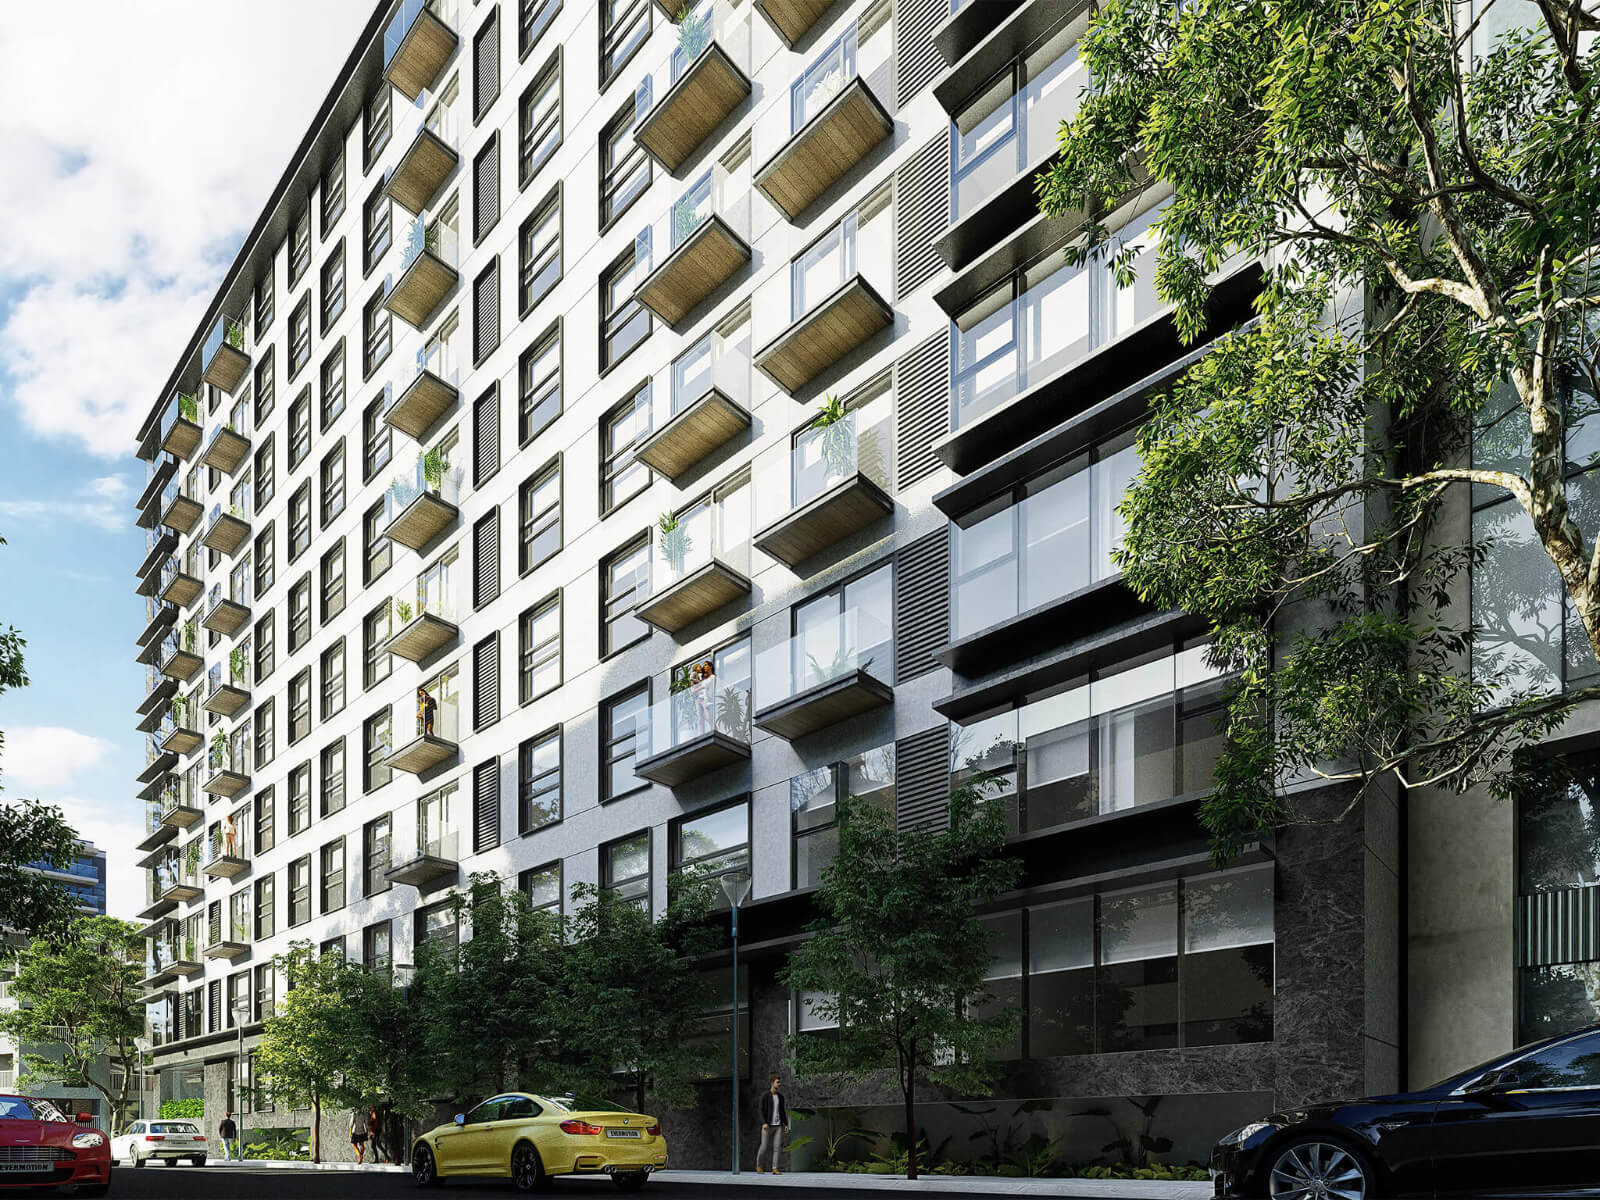 Penthouse con terraza semi techada de 37 m2, 4 estacionamientos, alberca con carril de nado, gimnasio, area de juegos, areas verdes, en vent